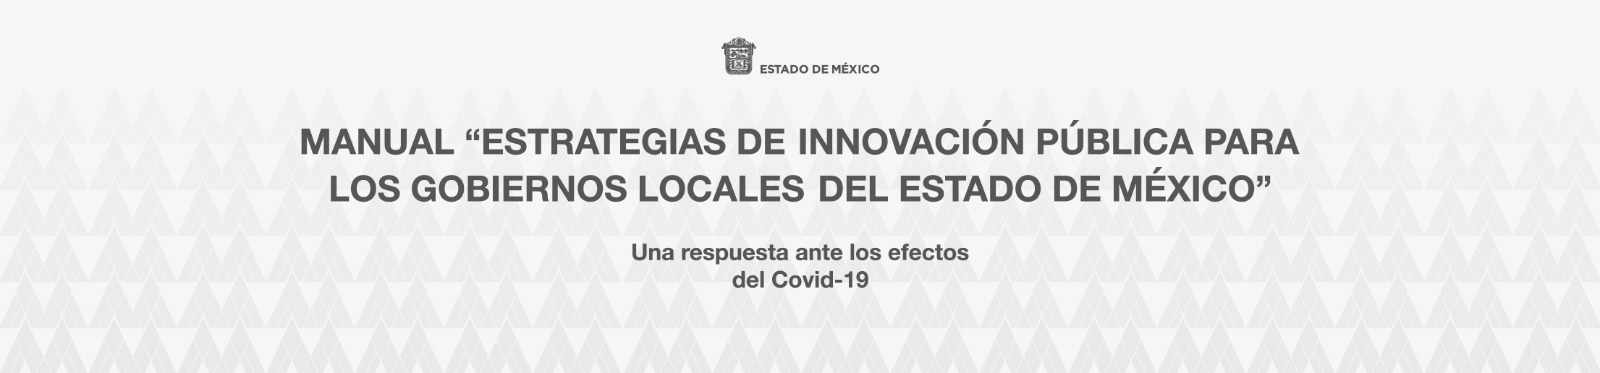 Manual "Estrategias de Innovación Pública para los Gobiernos Locales del Estado de México"